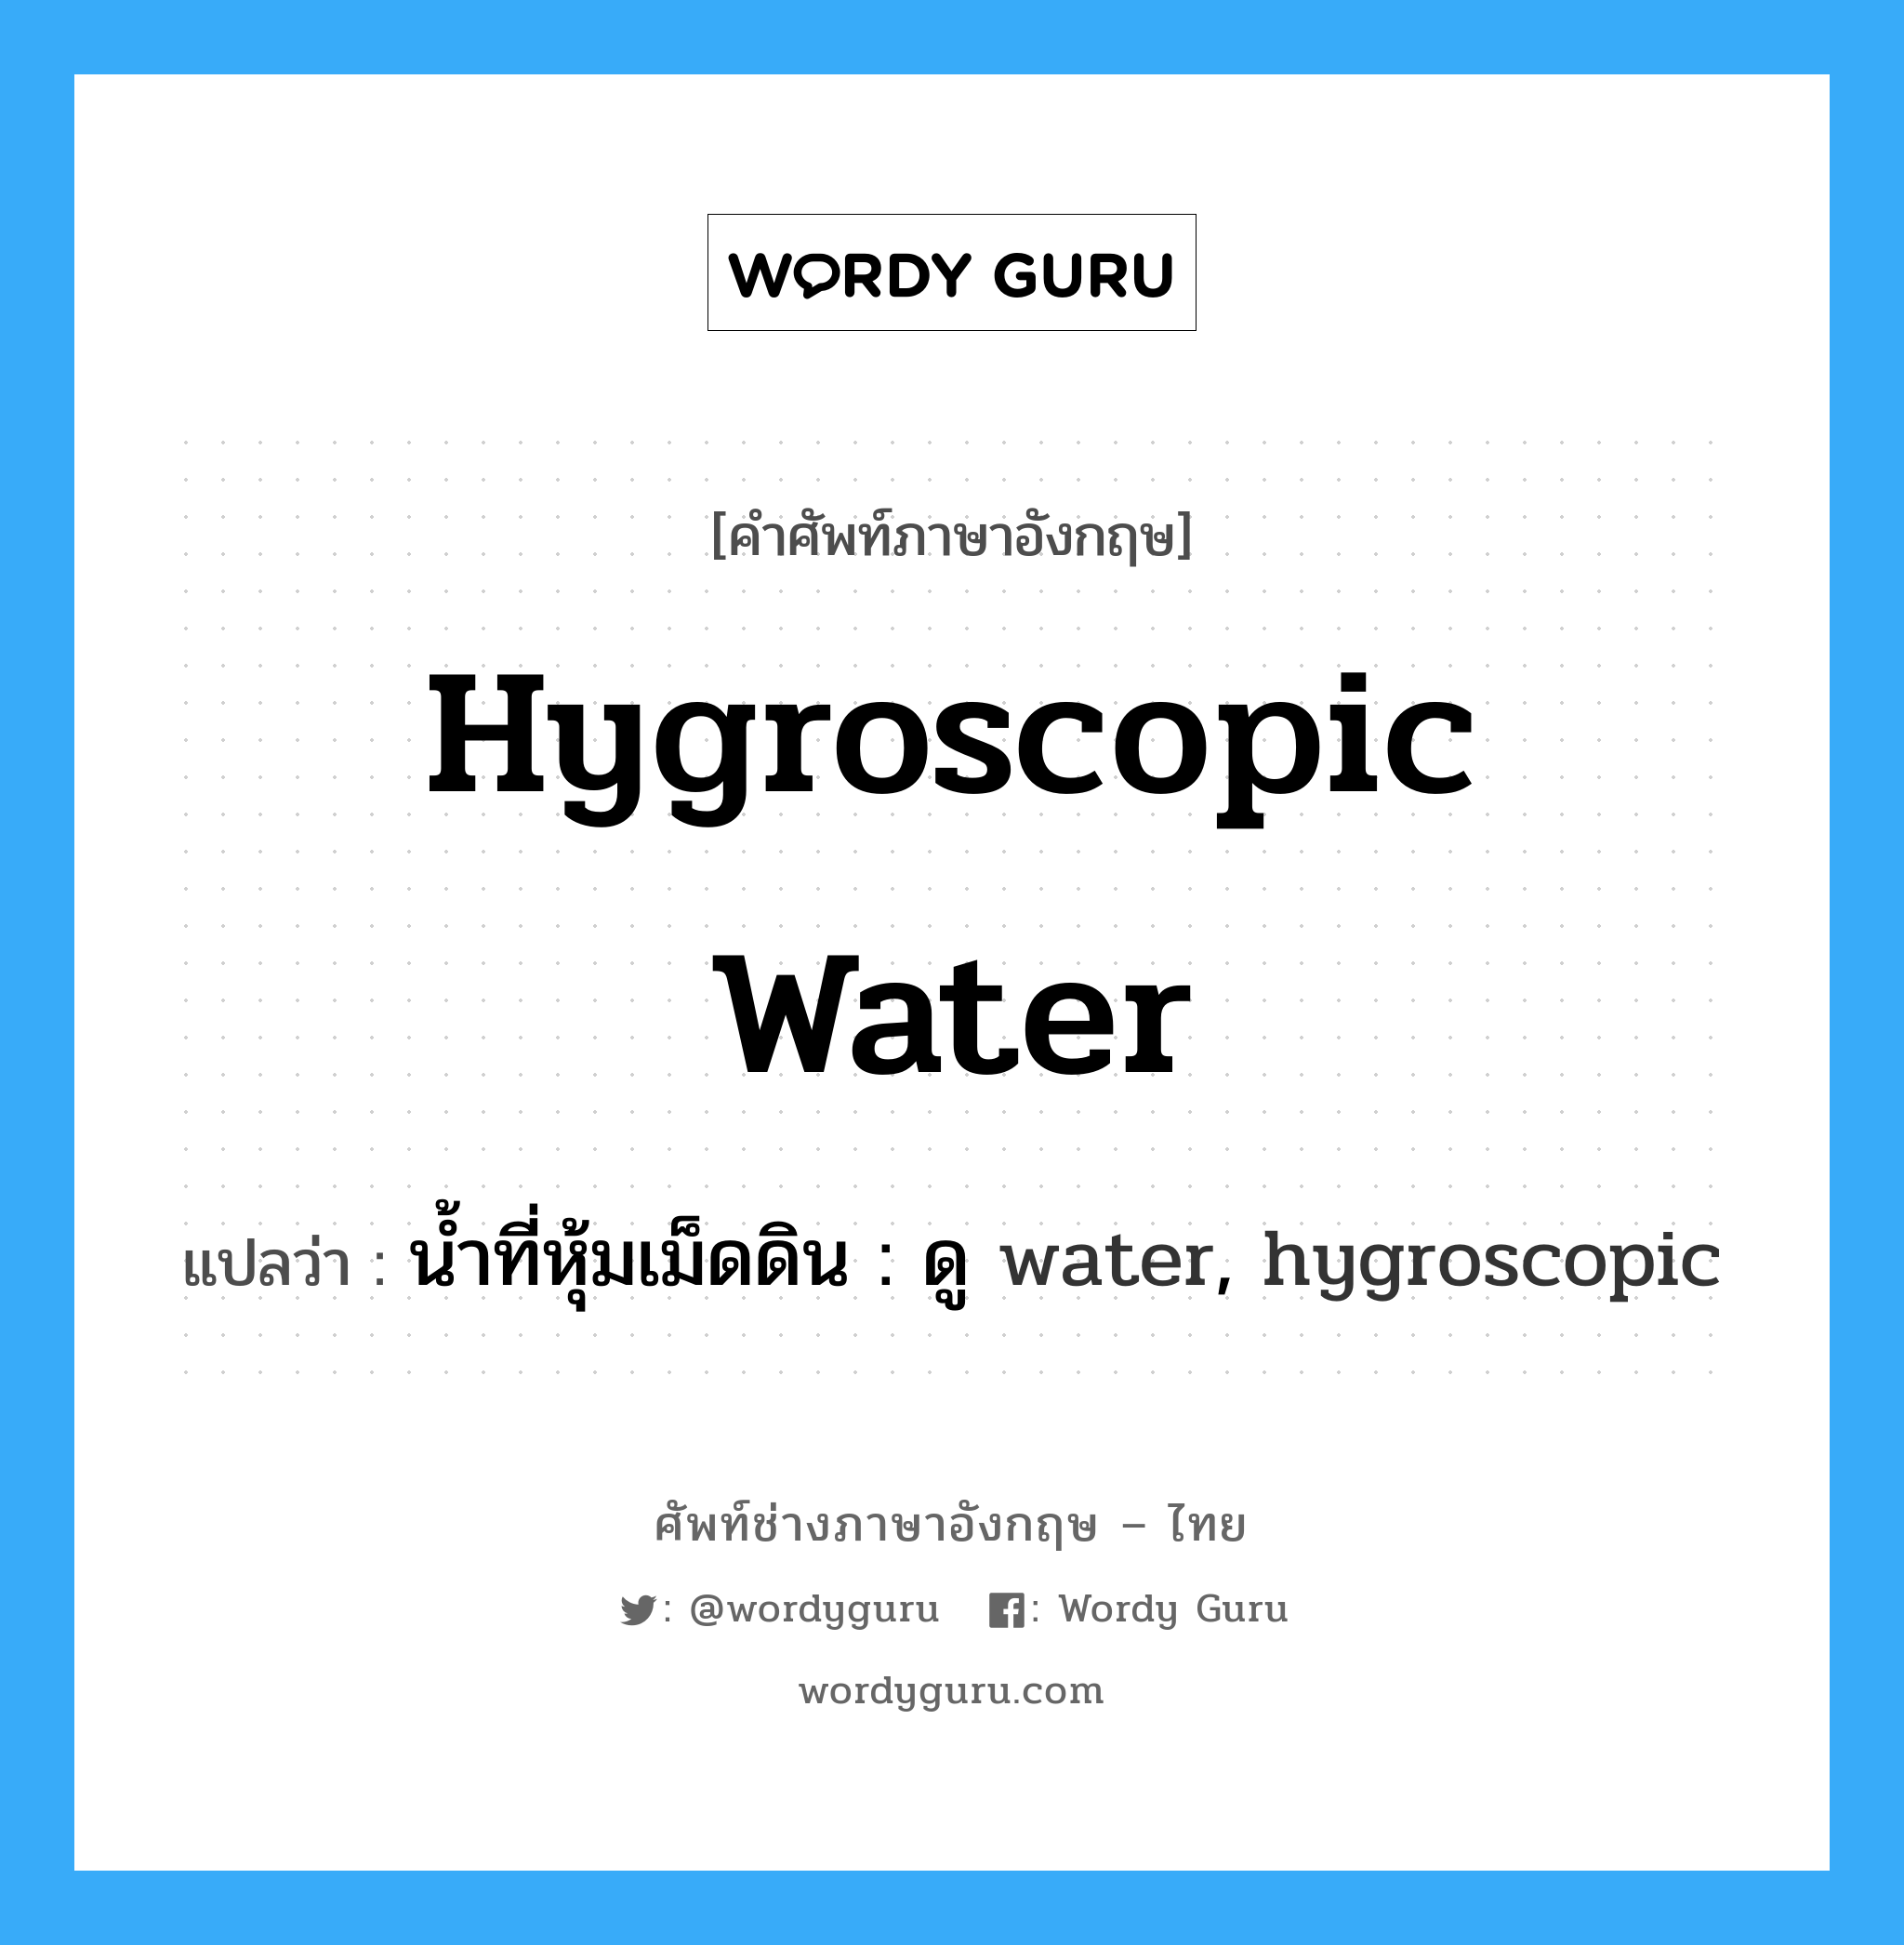 น้ำที่หุ้มเม็ดดิน : ดู water, hygroscopic ภาษาอังกฤษ?, คำศัพท์ช่างภาษาอังกฤษ - ไทย น้ำที่หุ้มเม็ดดิน : ดู water, hygroscopic คำศัพท์ภาษาอังกฤษ น้ำที่หุ้มเม็ดดิน : ดู water, hygroscopic แปลว่า hygroscopic water